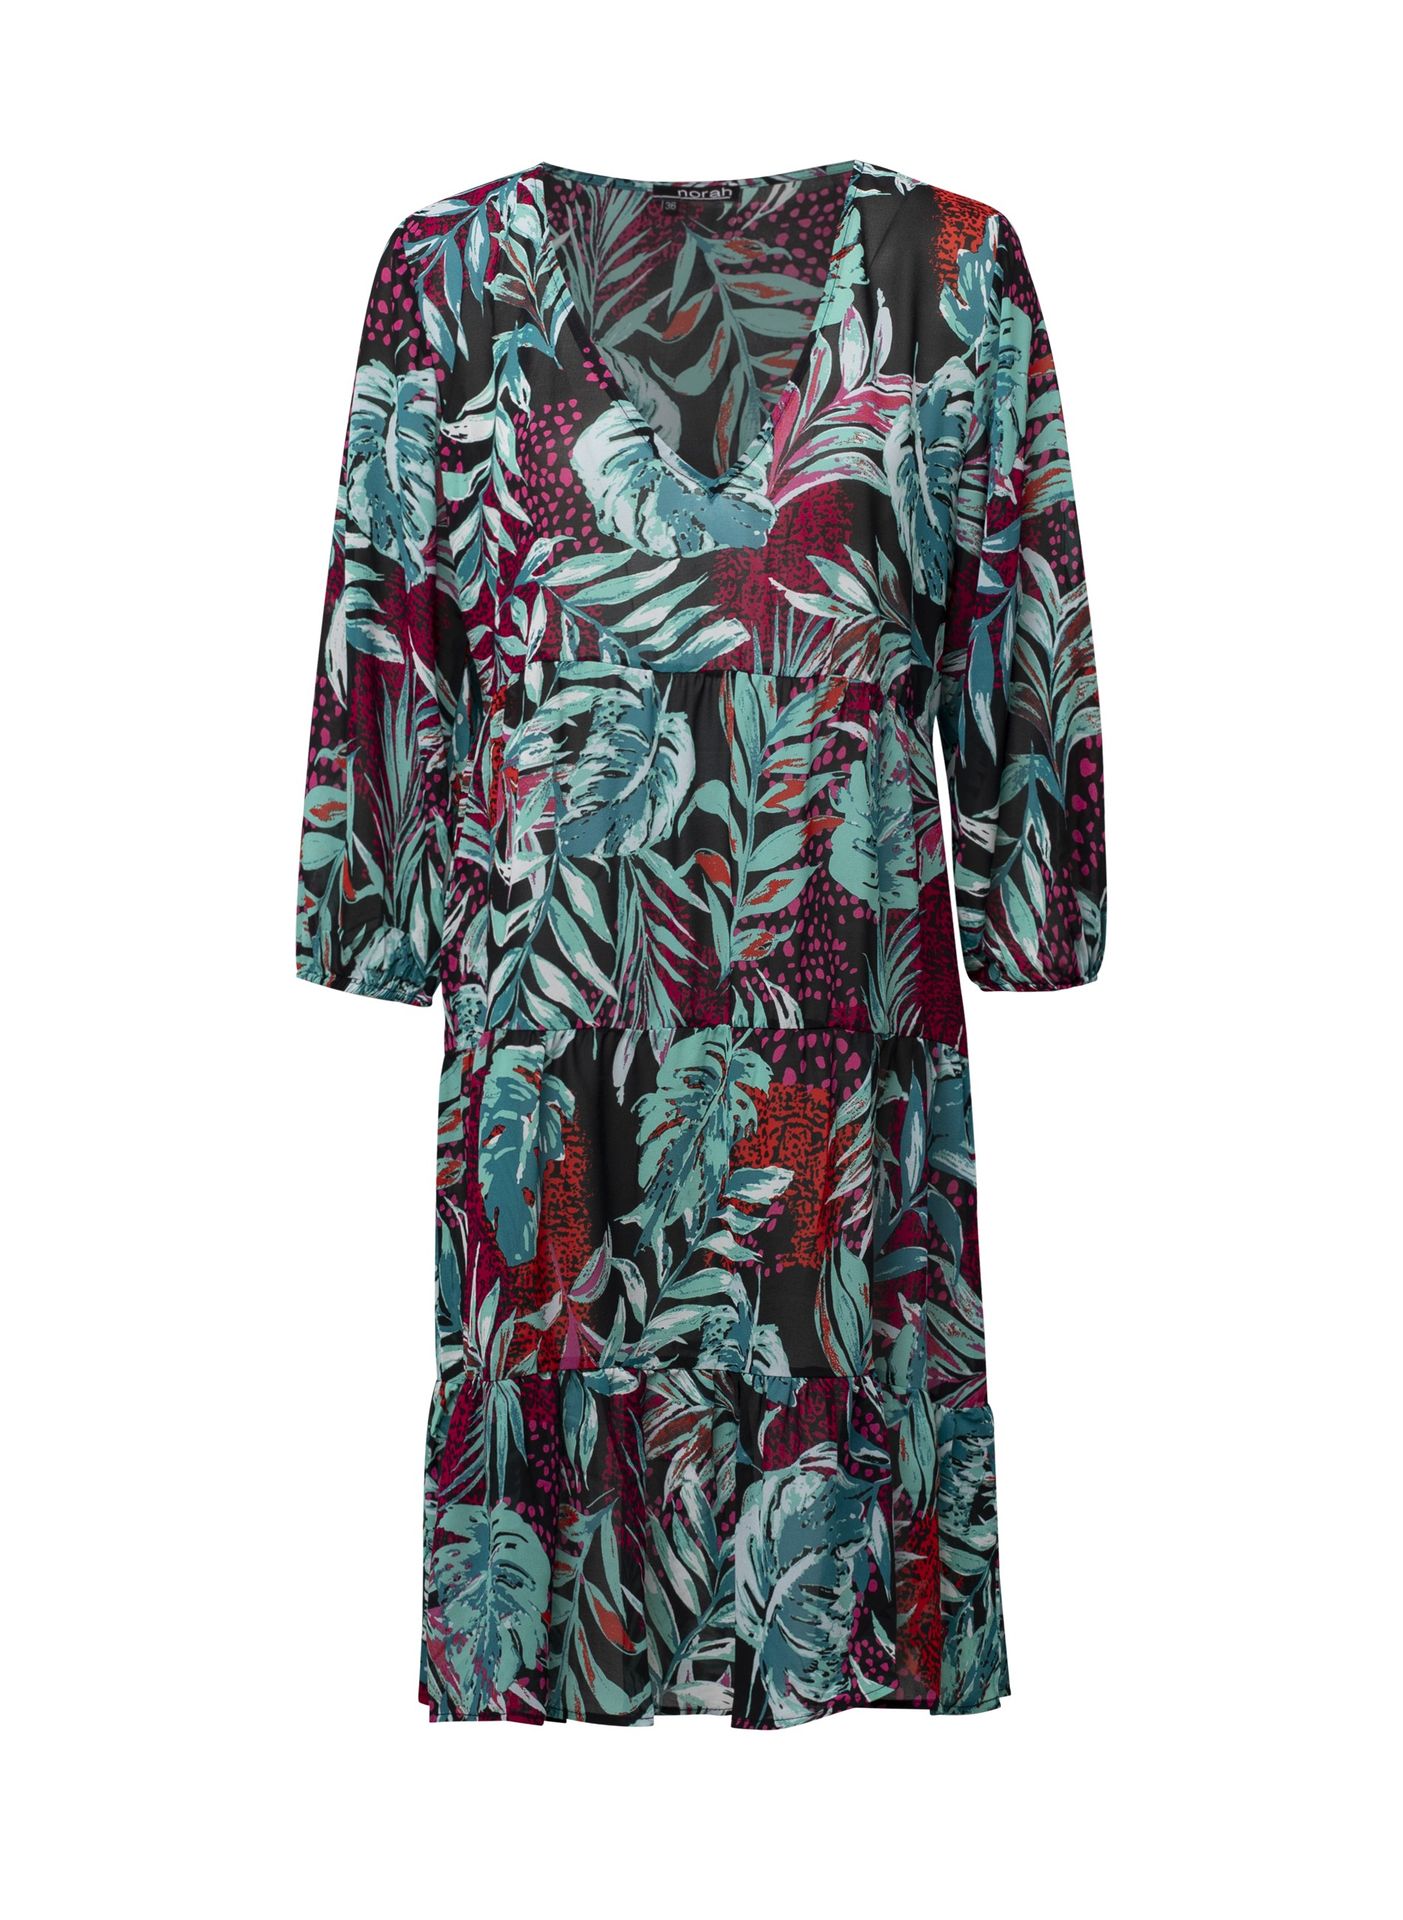 Norah Midi jurk meerkleurig fuchsia multicolor 213005-957